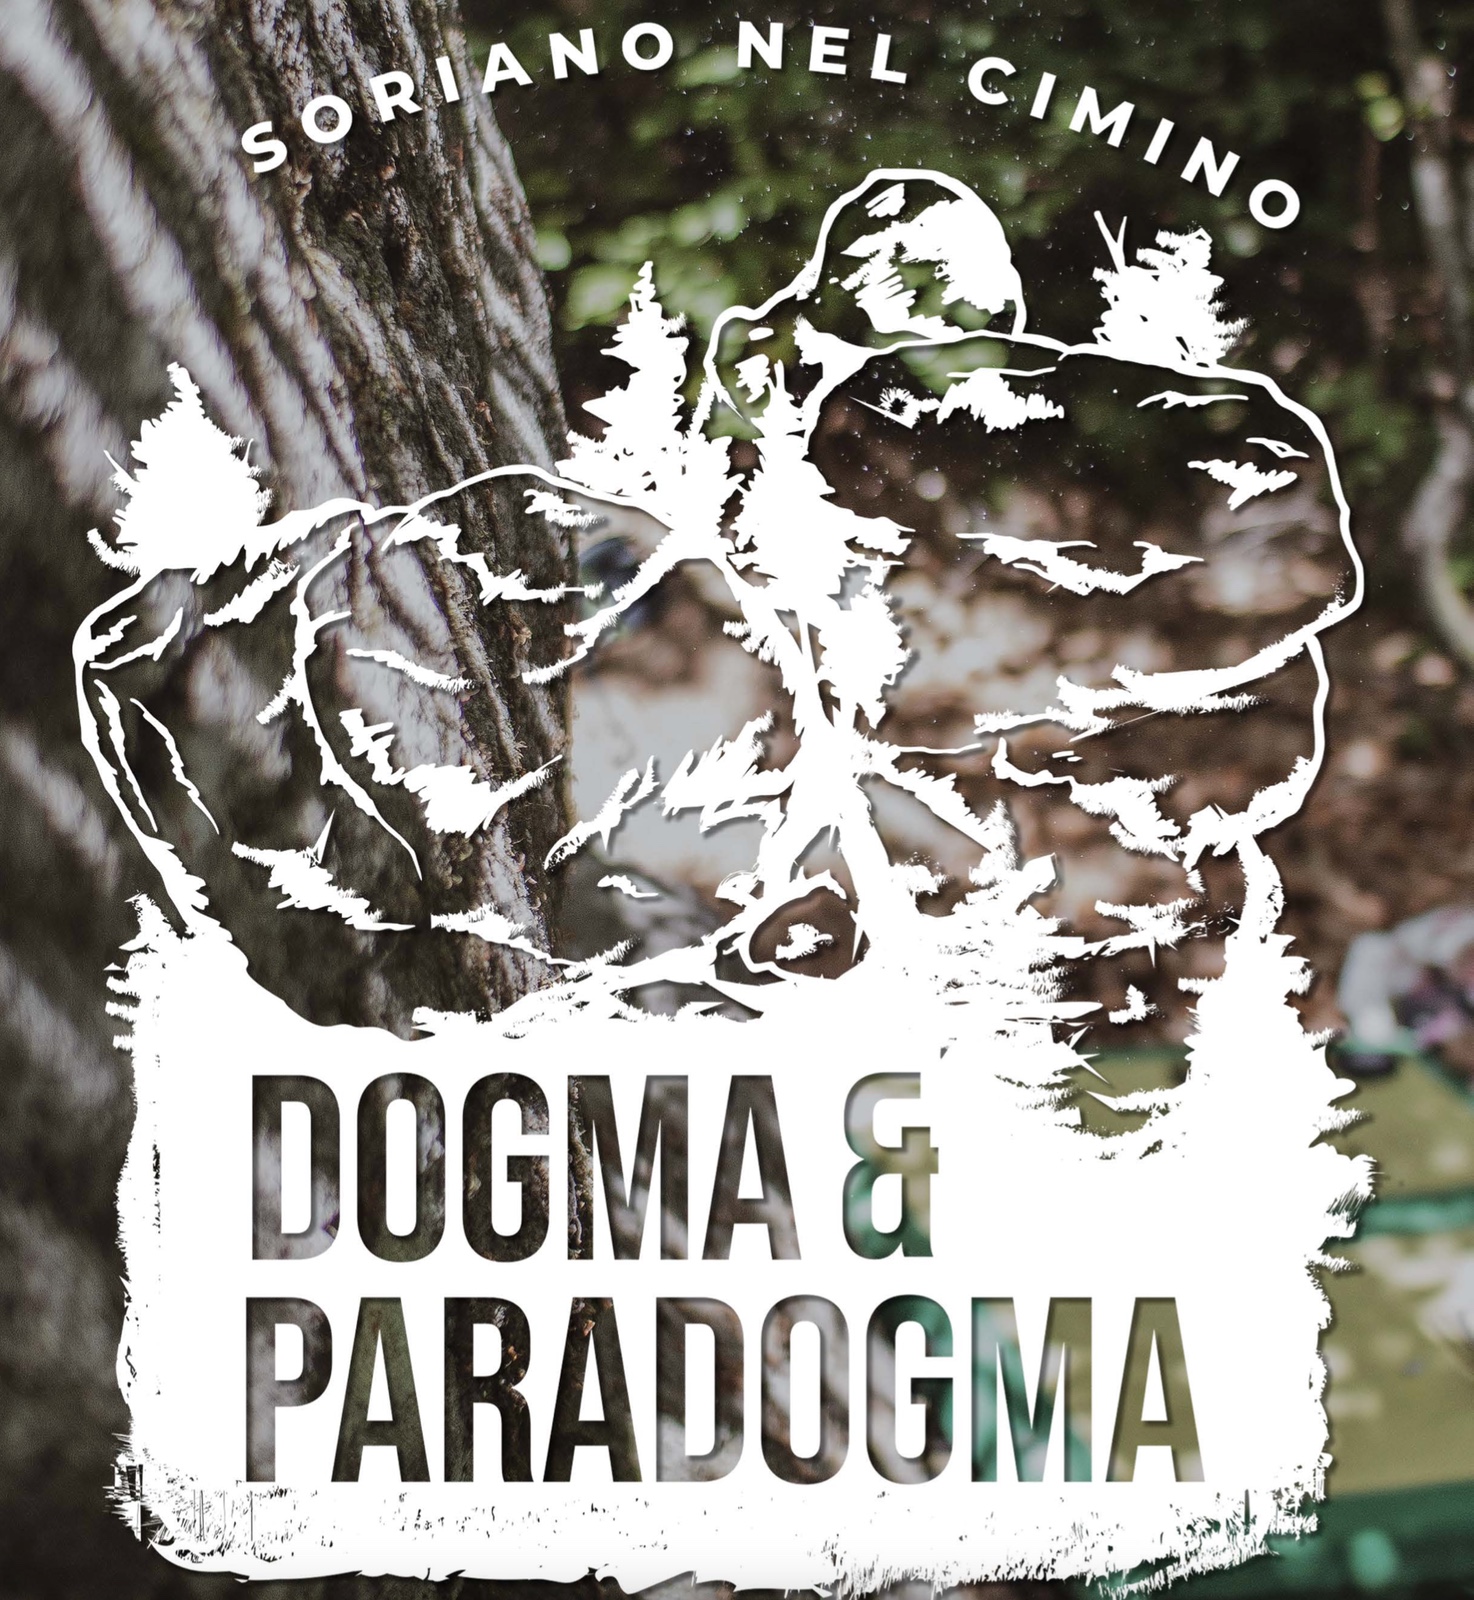 Soriano nel Cimino - Dogma e Paradogma: la guida è online!